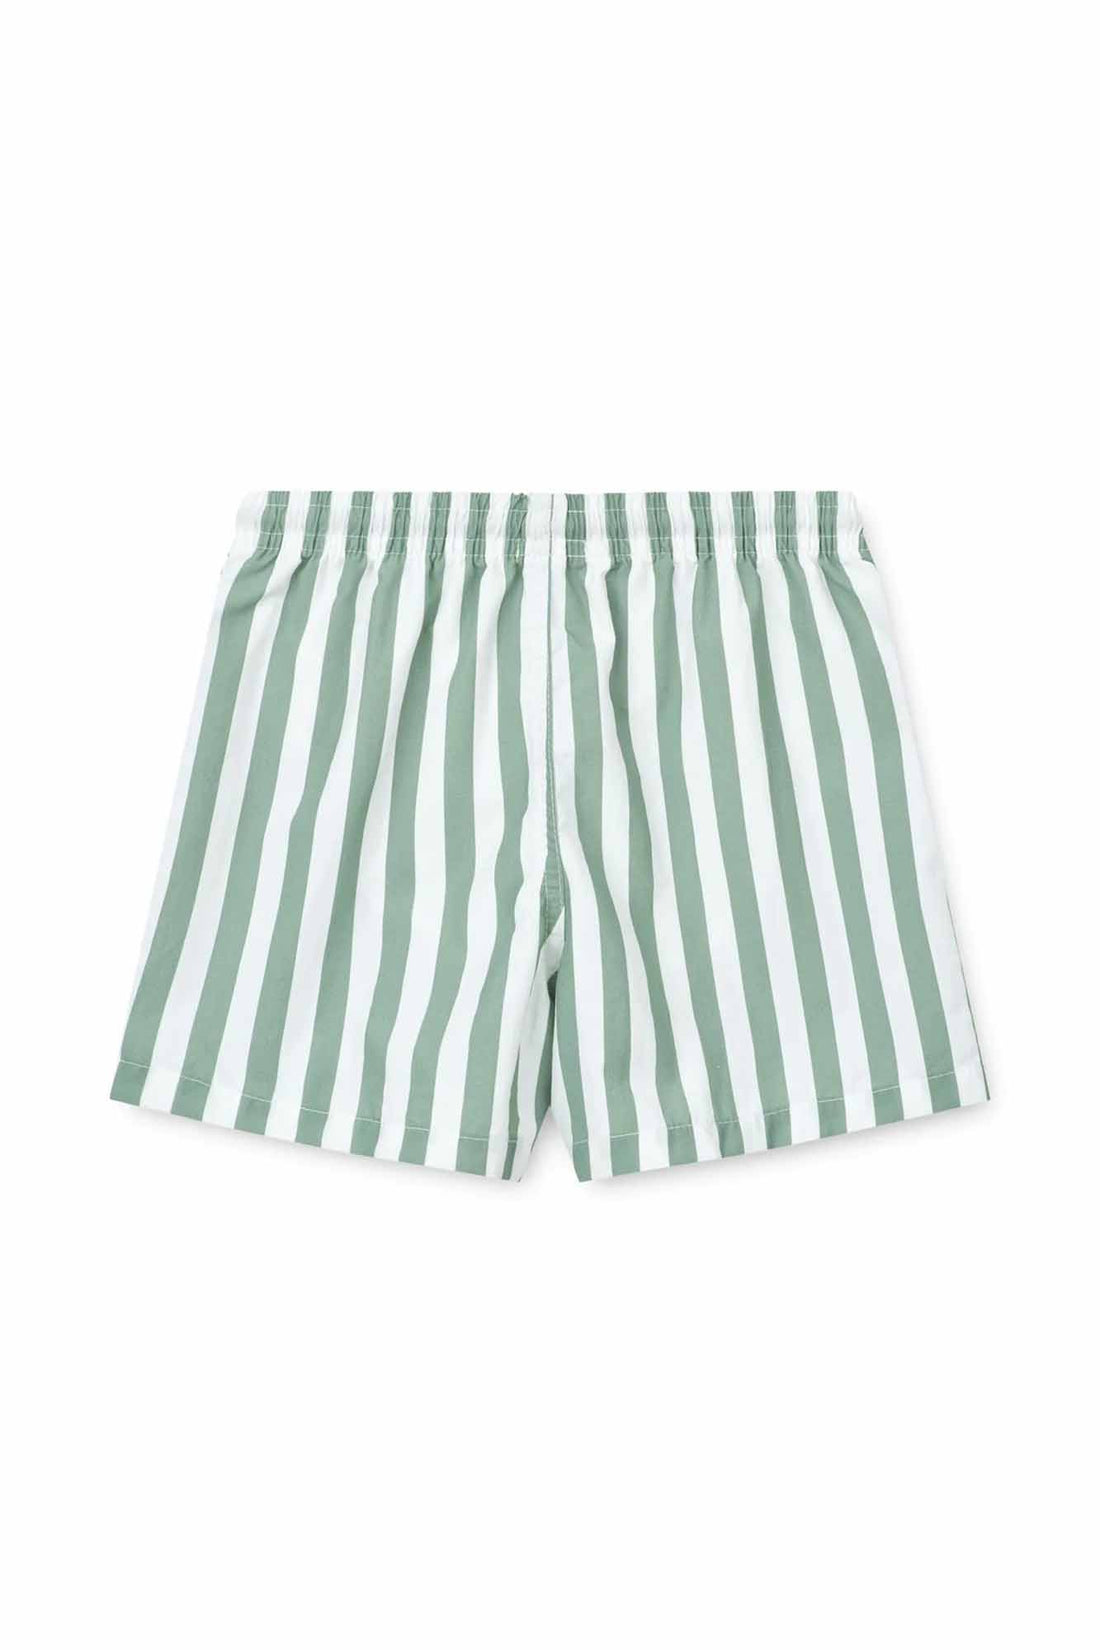 Liewood Stripe Peppermint/White Duke Board Shorts